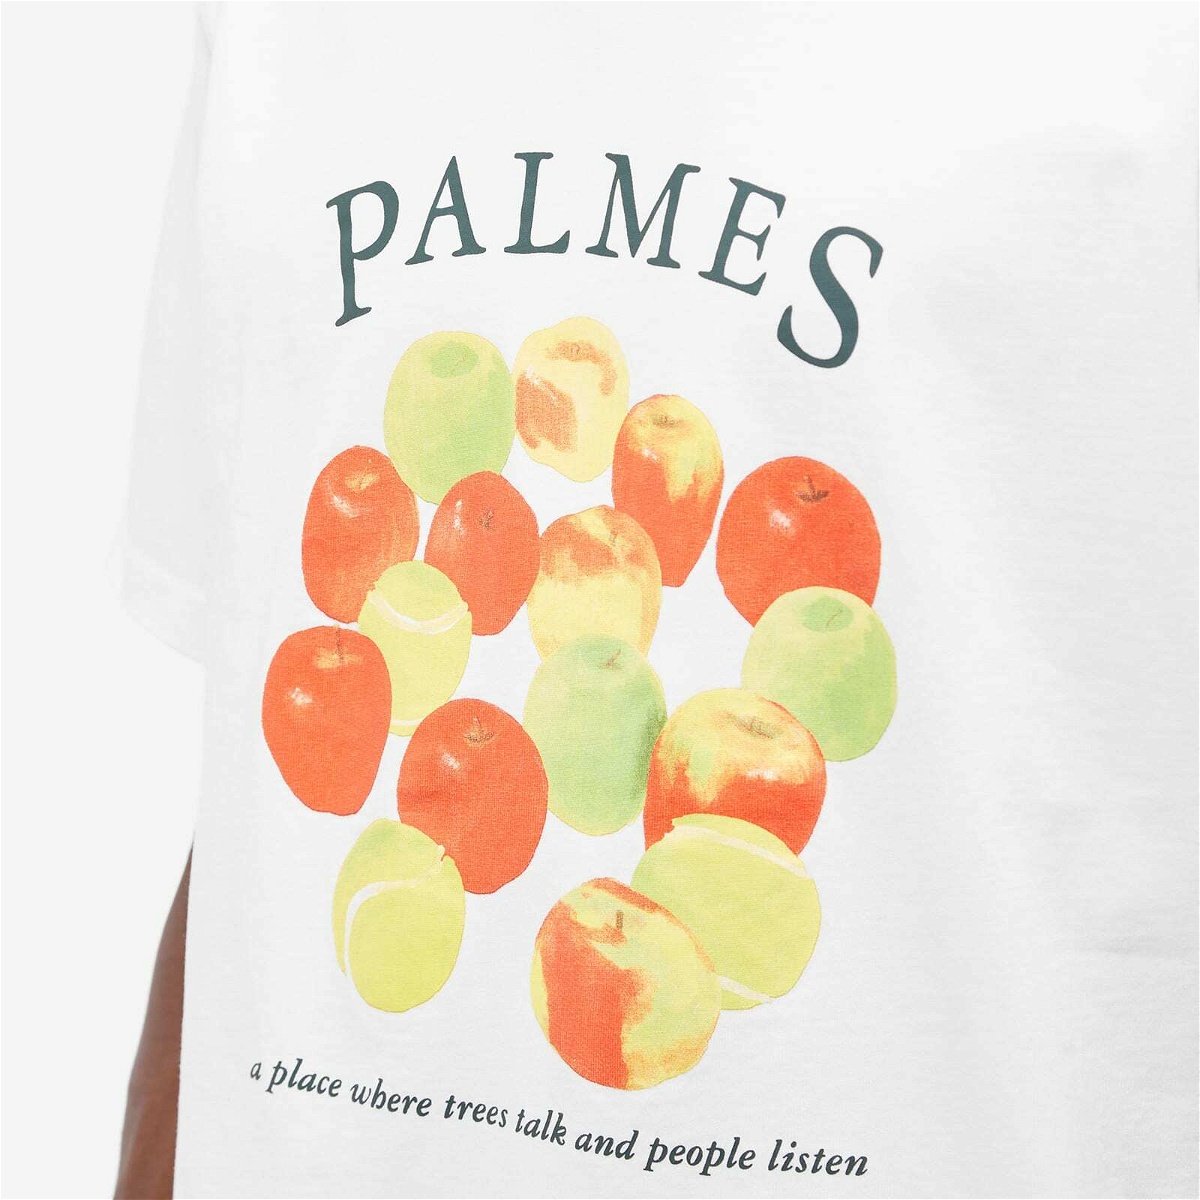 Palmes Men's Apples T-Shirt in White